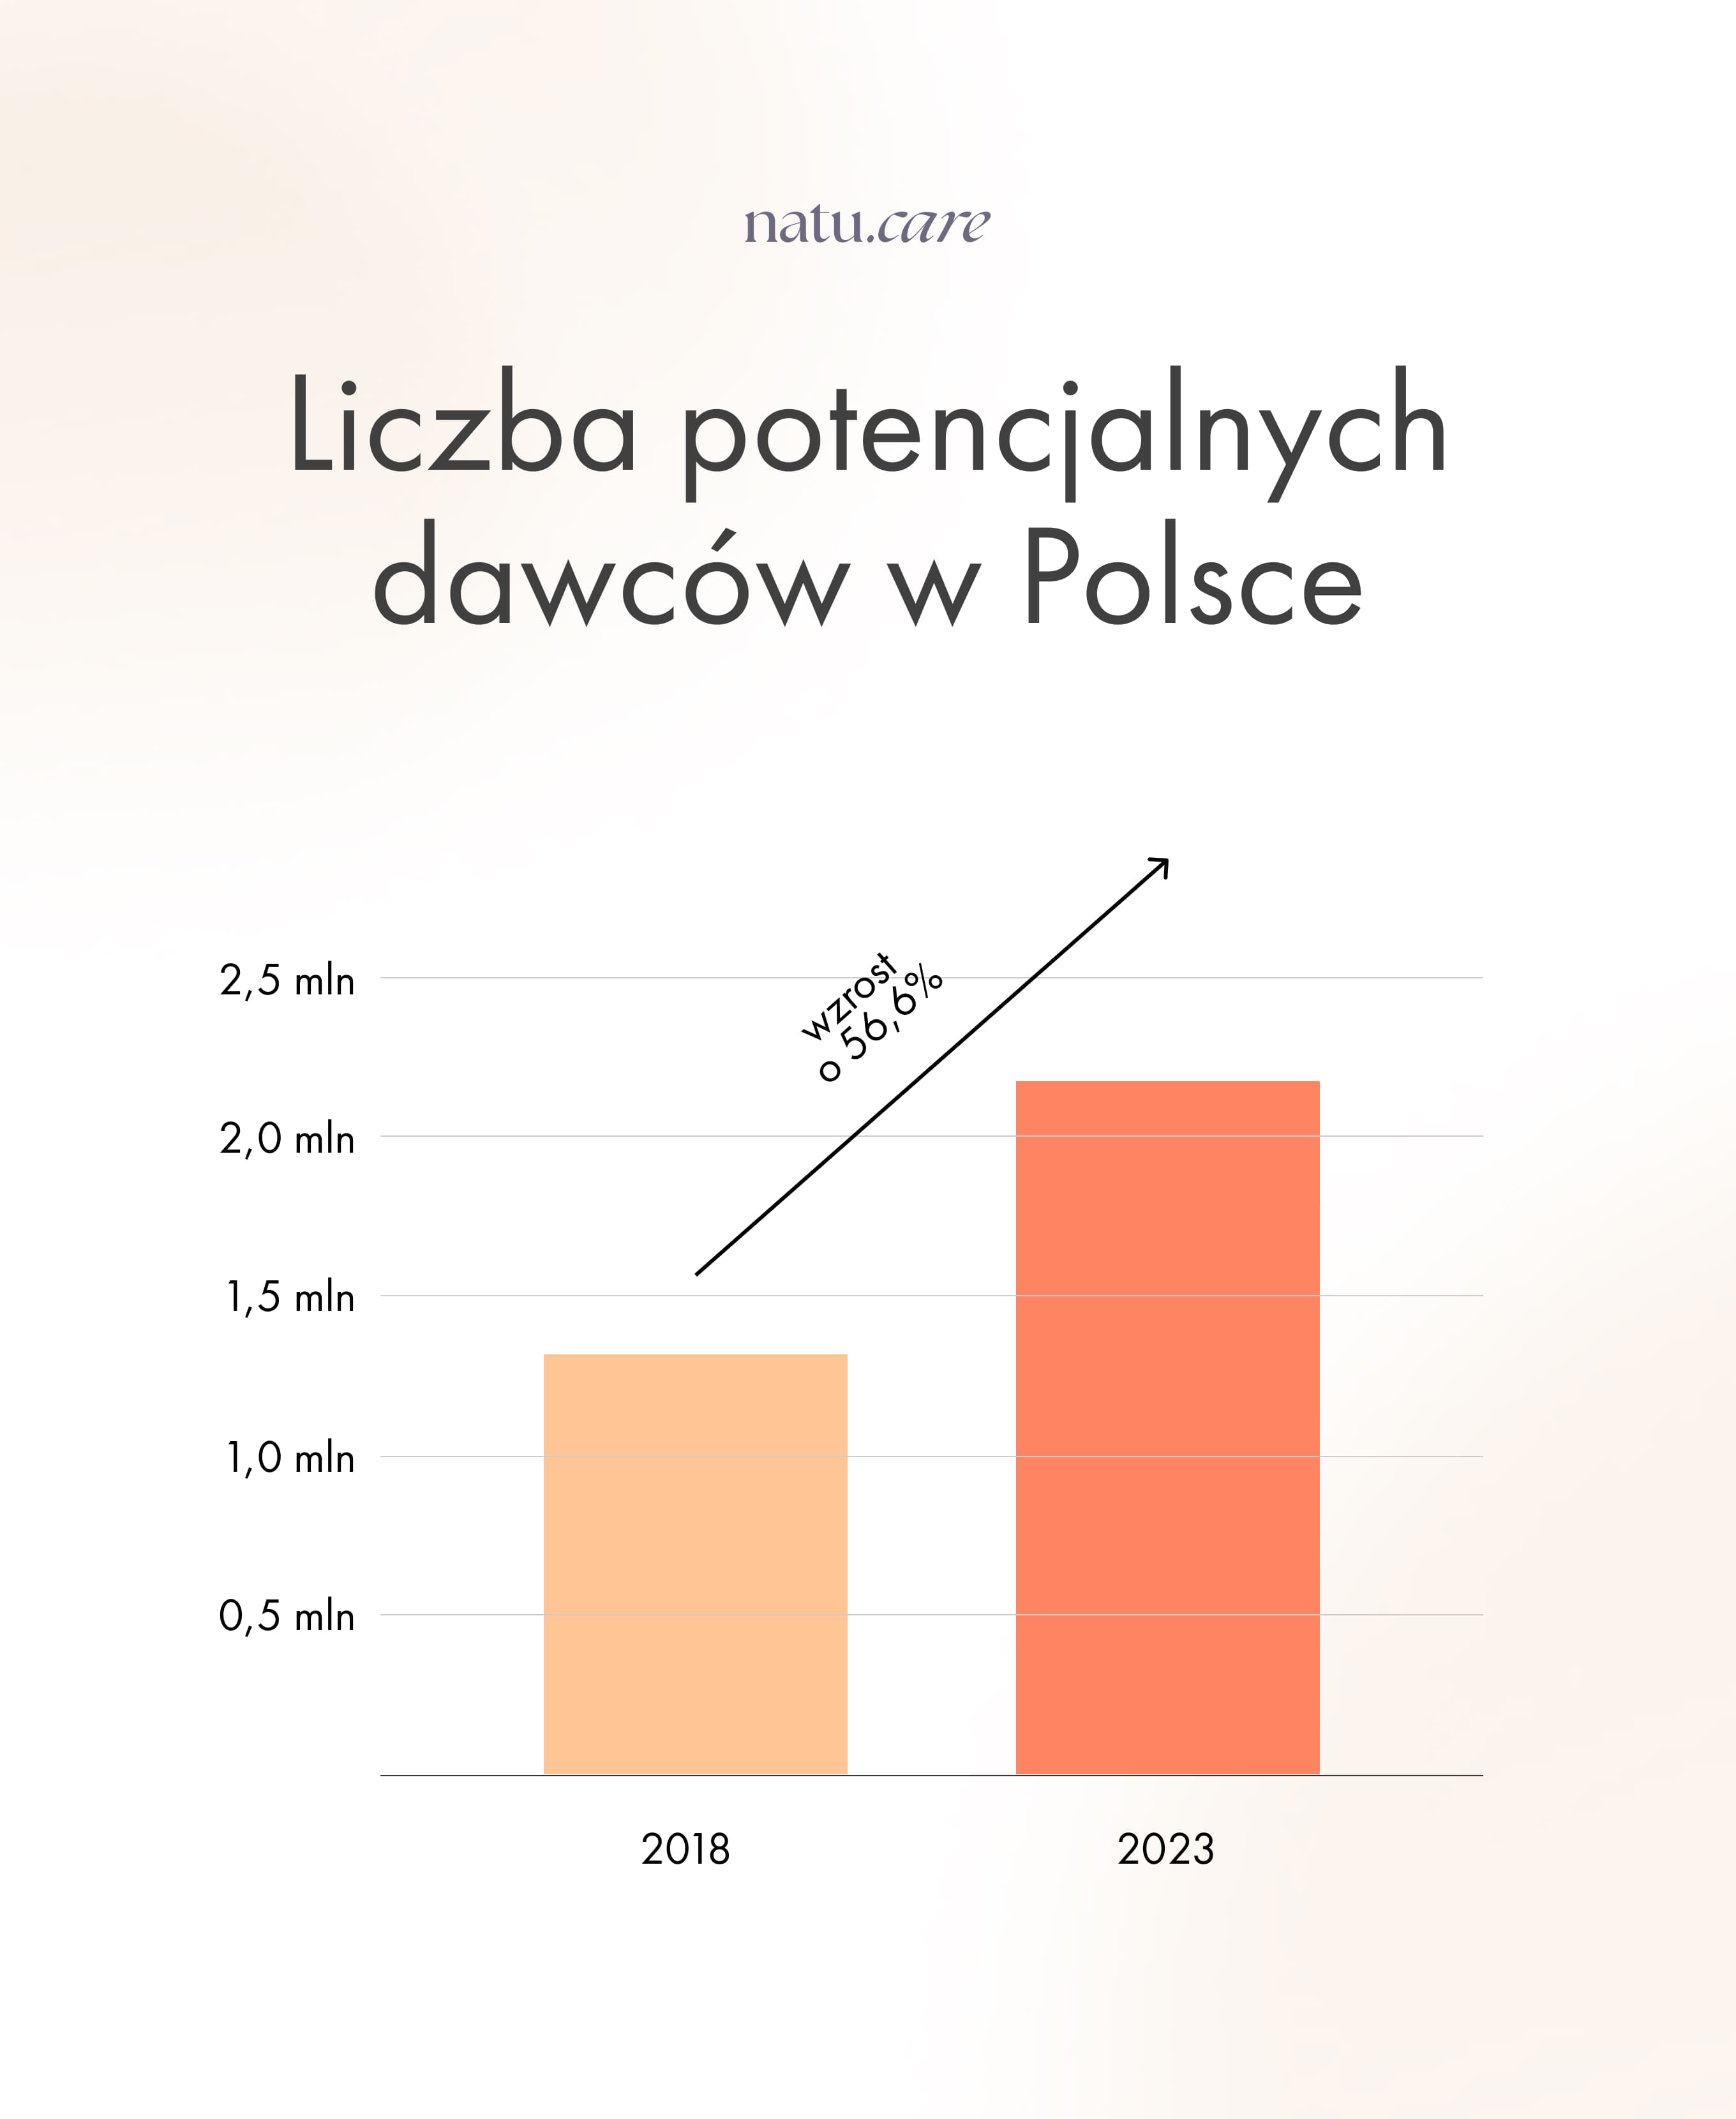 Liczba potencjalnych dawców szpiku kostnego w Polsce